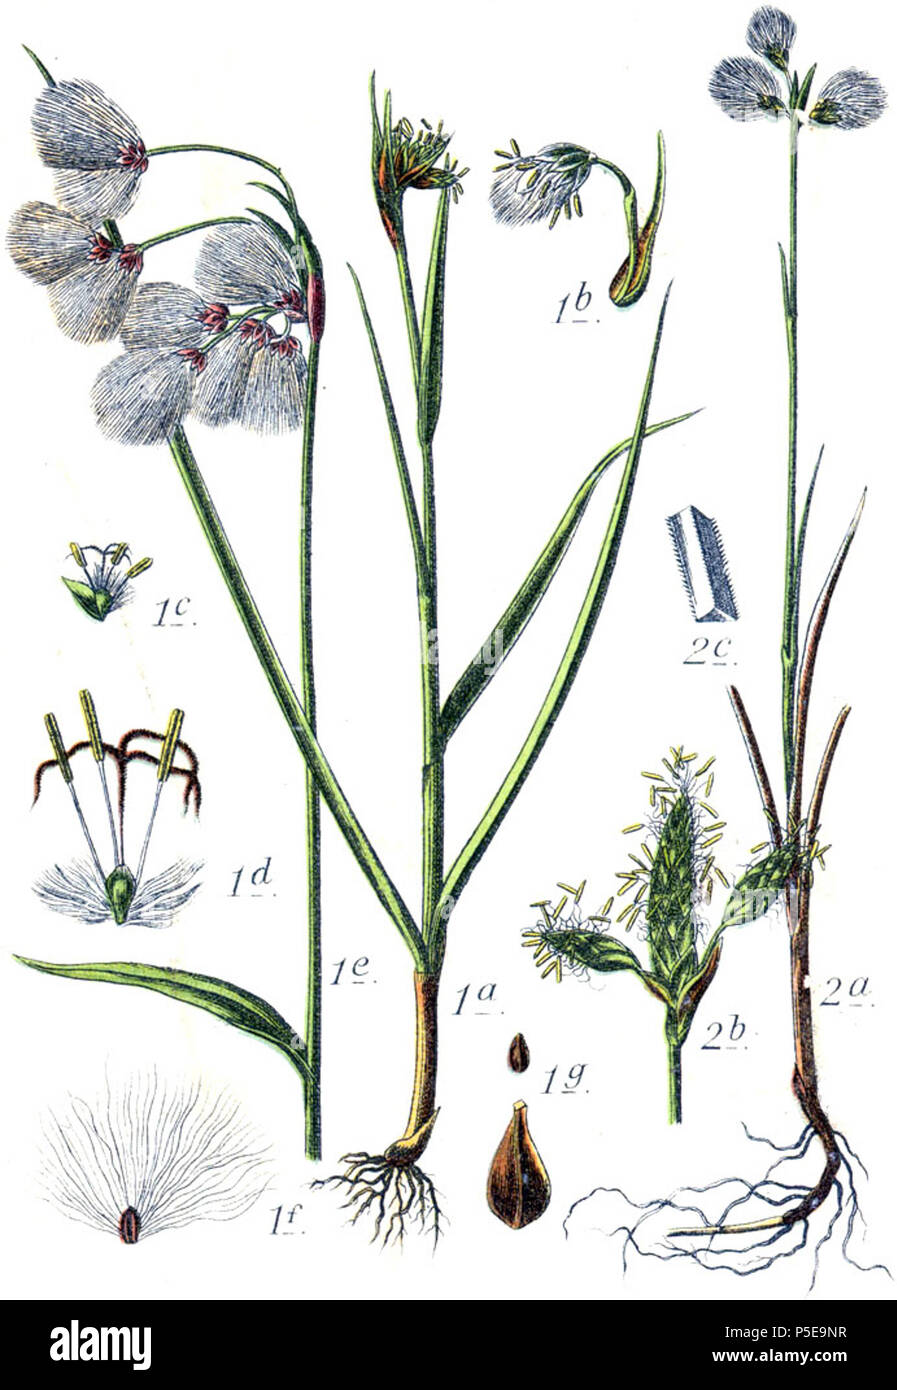 Eriophorum latifolium et Eriophorum gracile  Aus: J. Sturm's Flora von Deutschland 522 Eriophorum spp Sturm17 Stock Photo